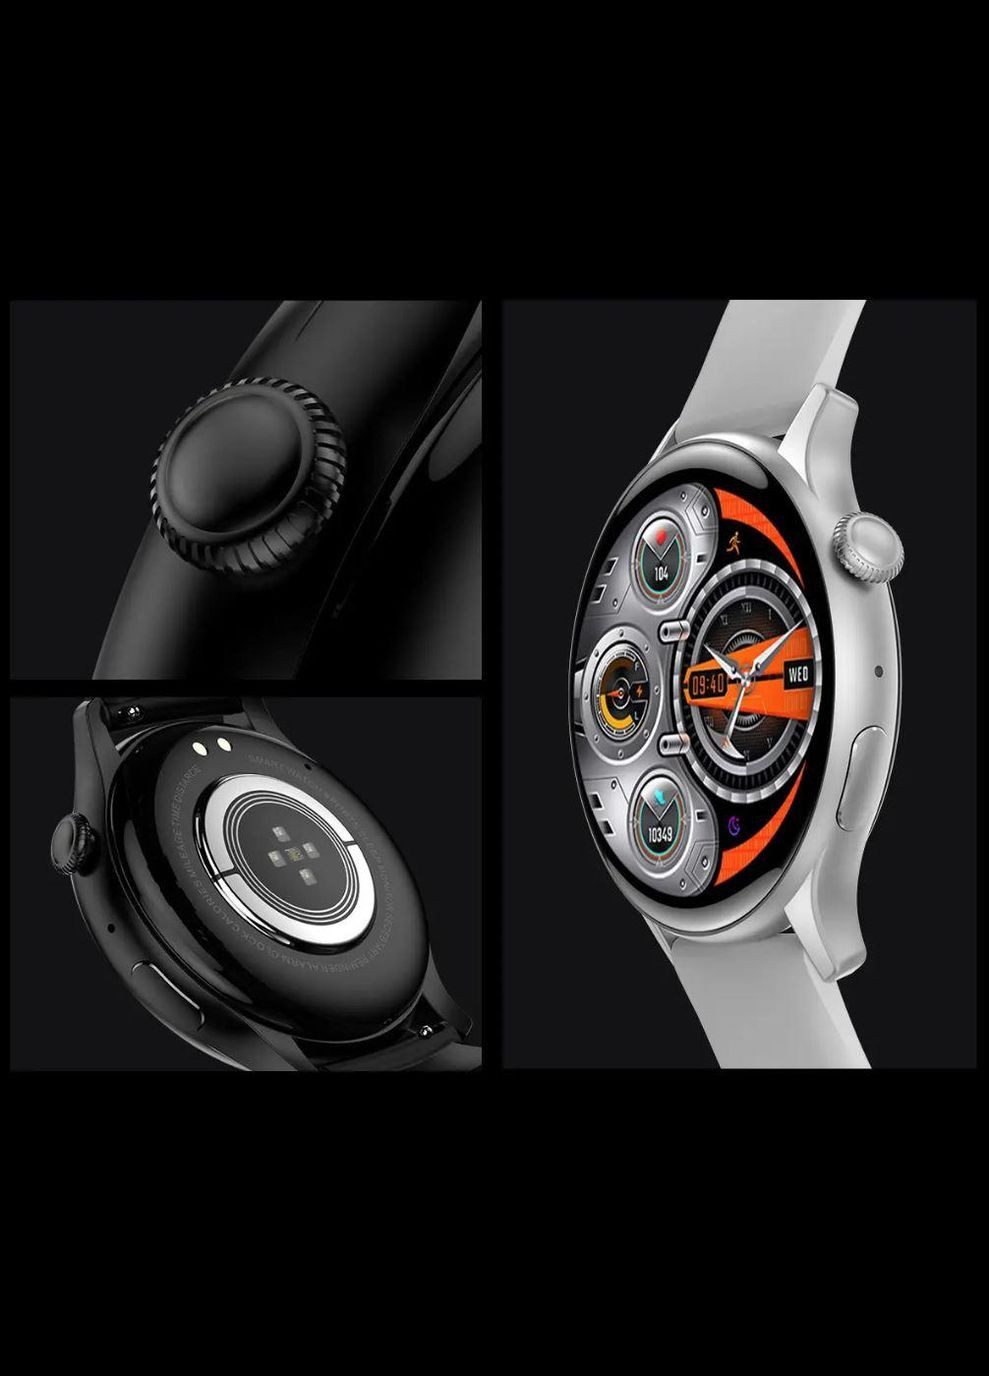 Умные часы Y10 Pro AMOLED Smart sports watch (с поддержкой звонков) черные Hoco (293345642)